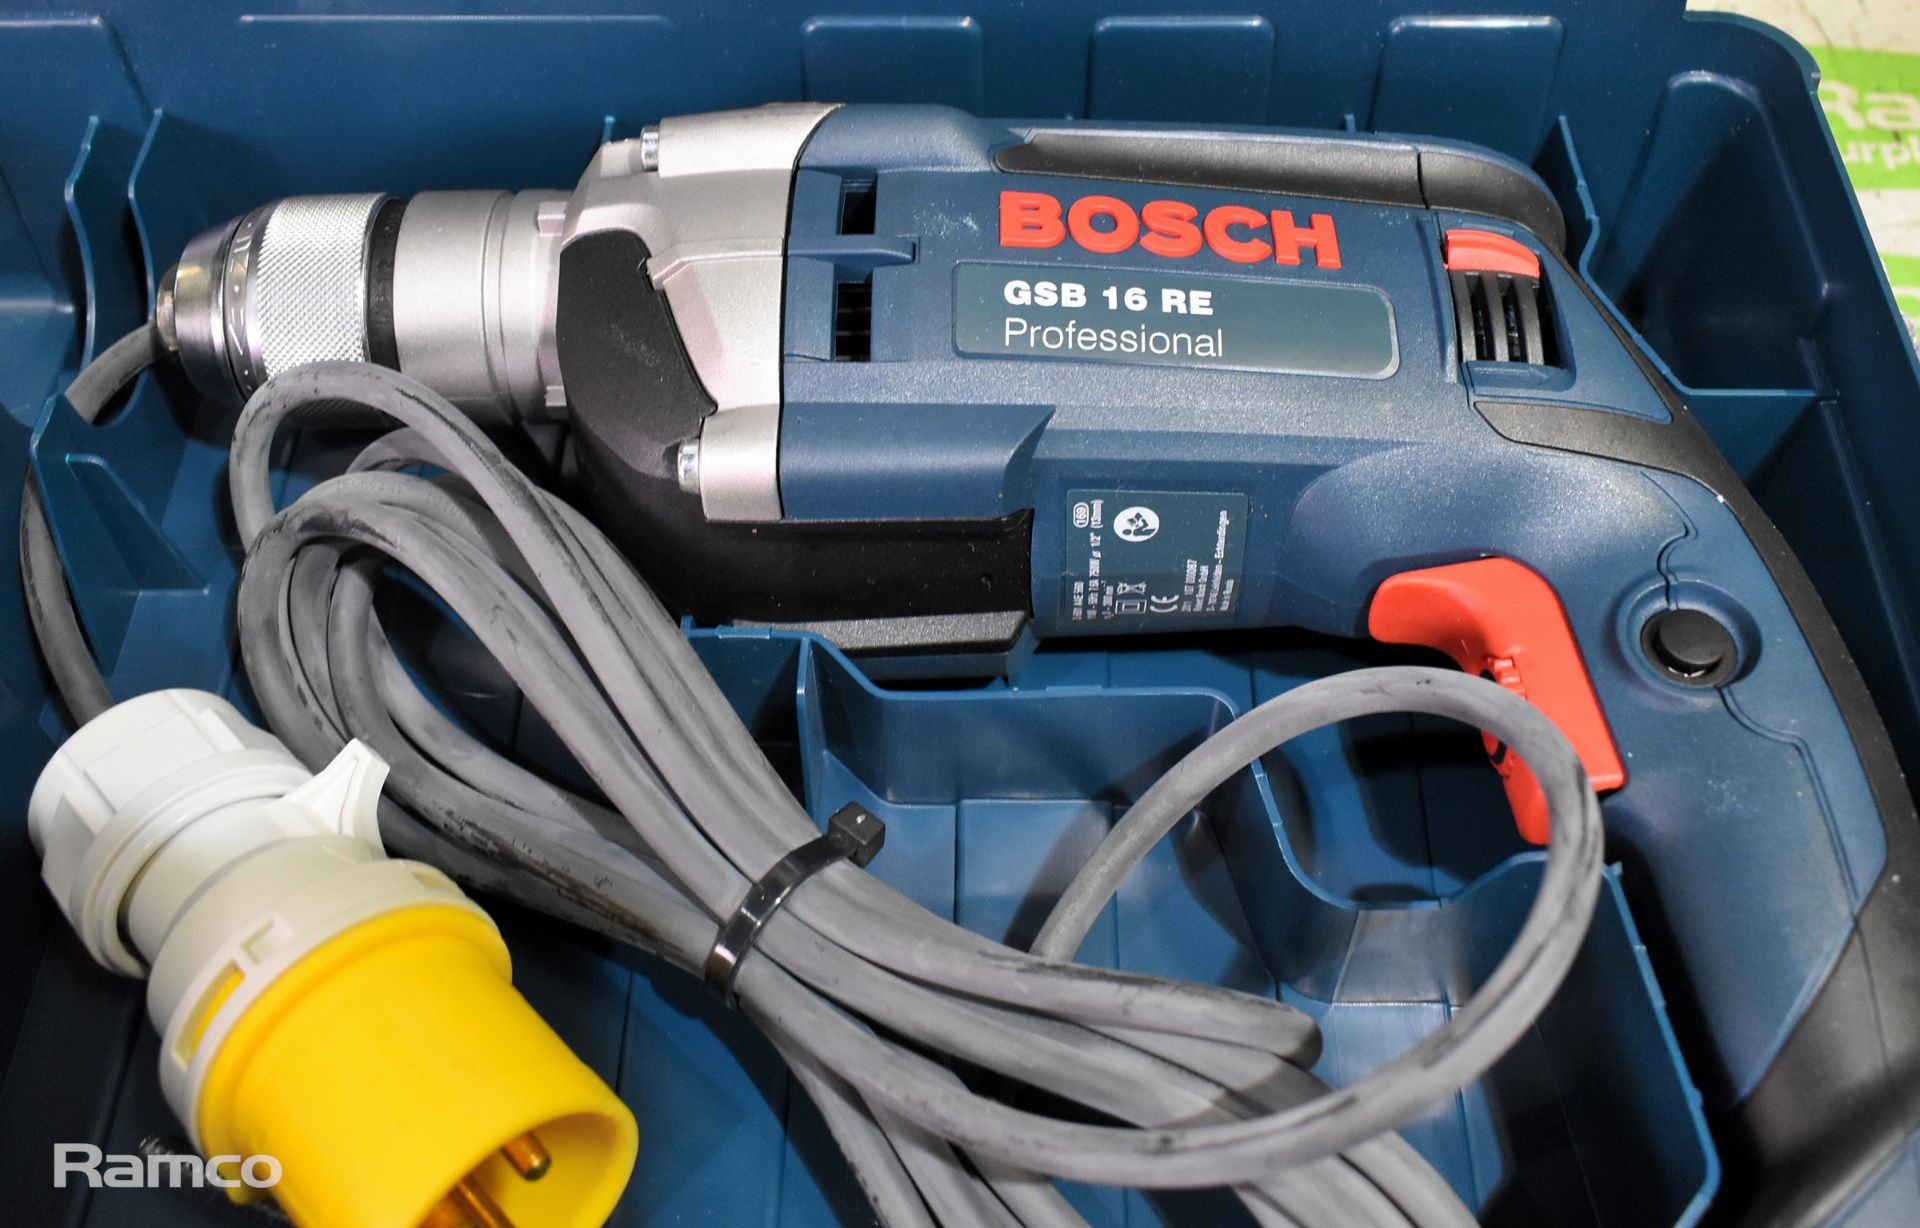 Bosch GSB 16 RE 110V electric drill with storage case - Bild 3 aus 6